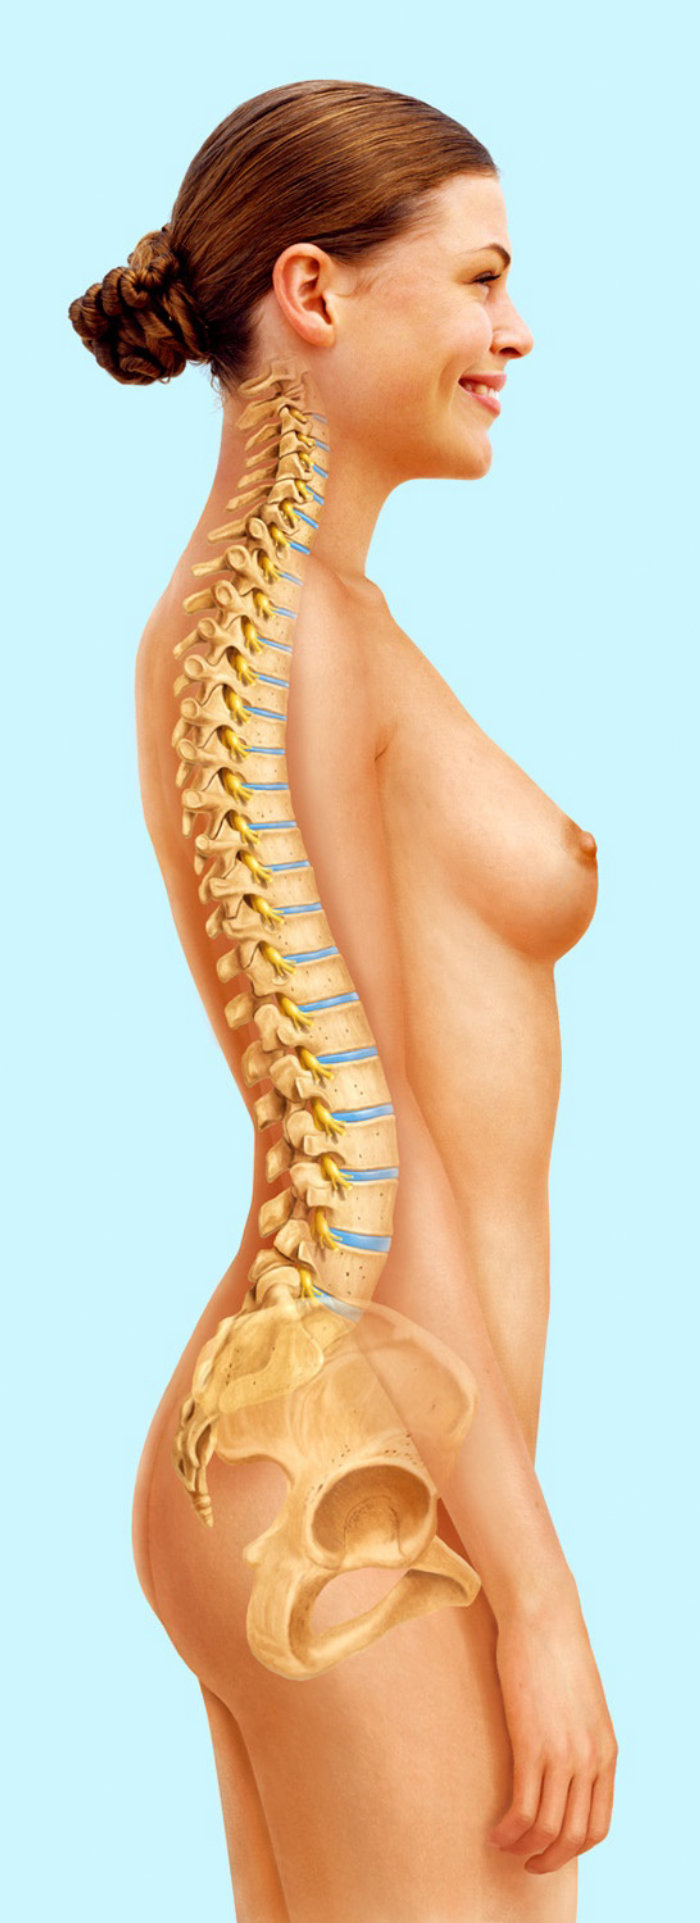 Épine dorsale femme | Collection d&#39;illustration médicale